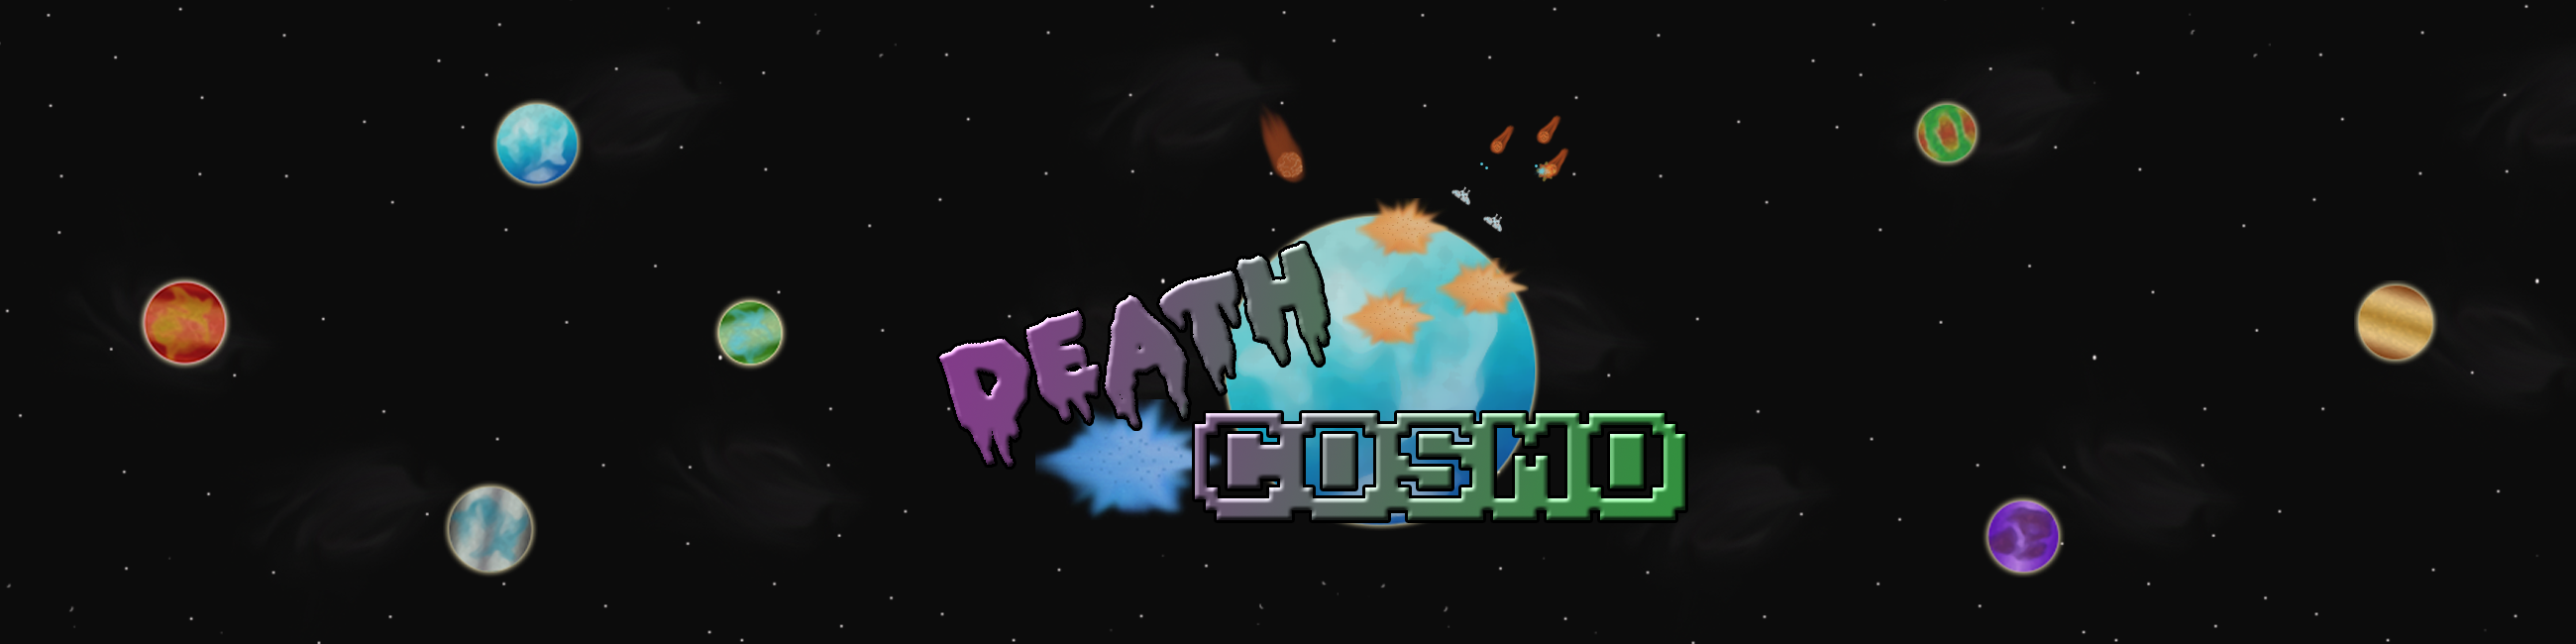 Death Cosmo Mini